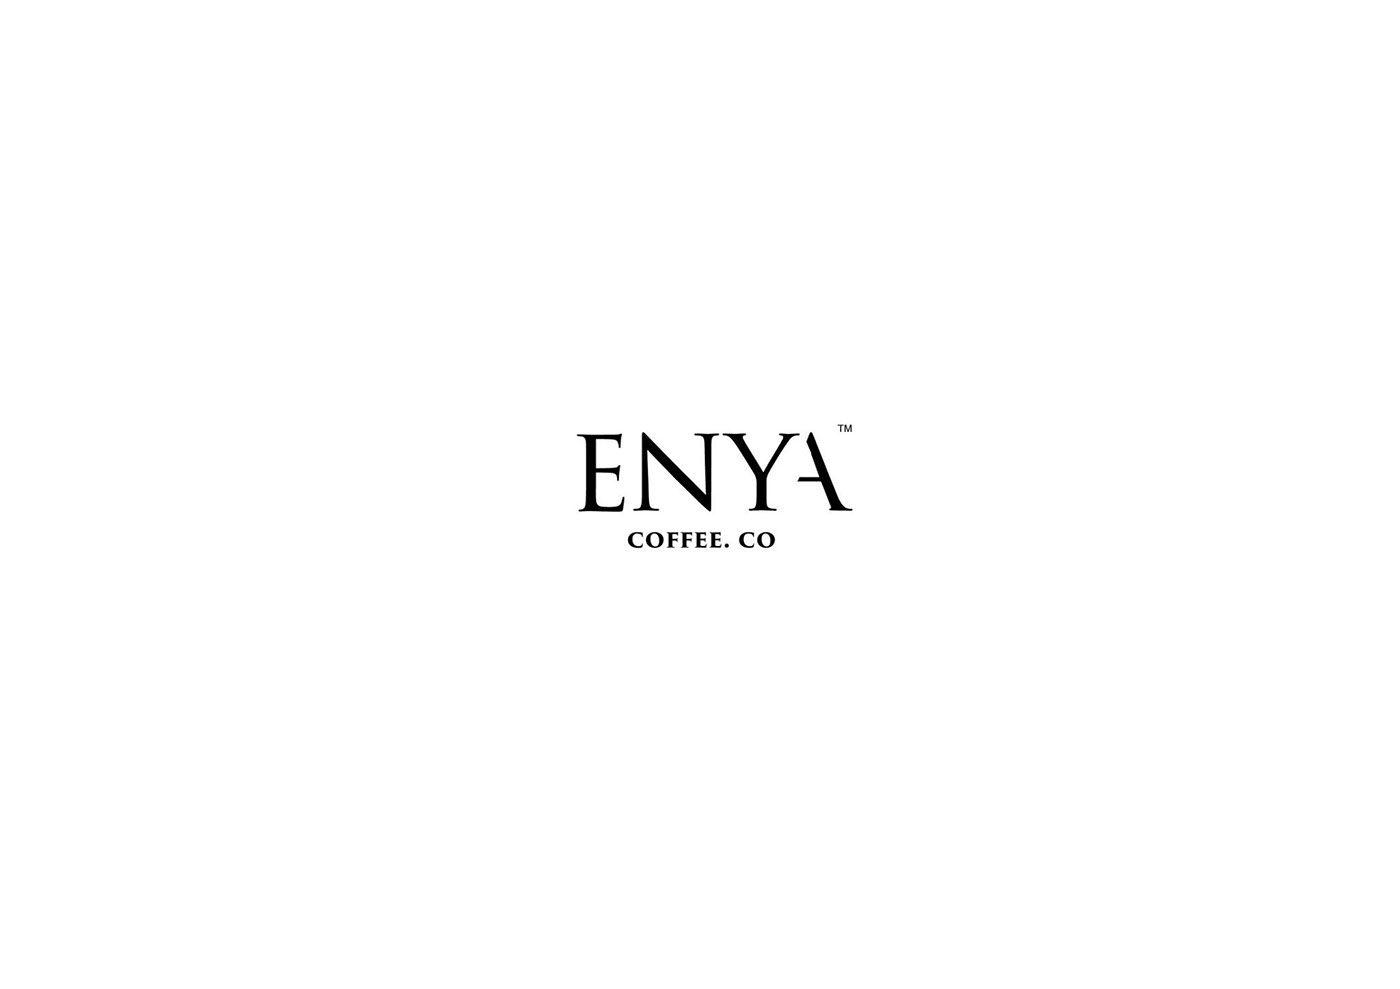 Enya Logo - ENYA coffee